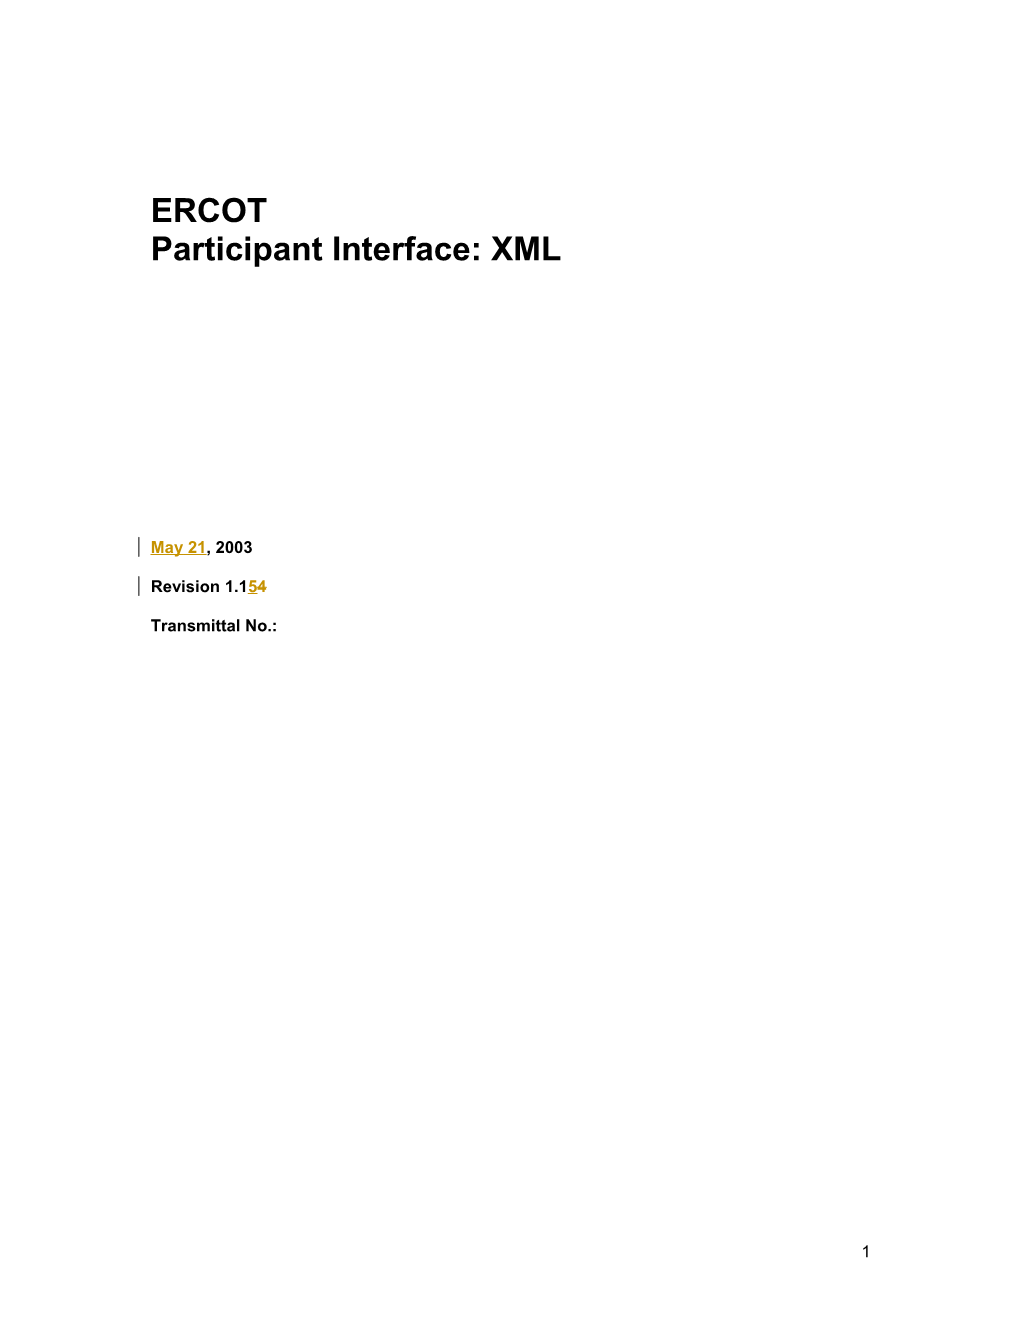 ERCOT Participant Interface: XML